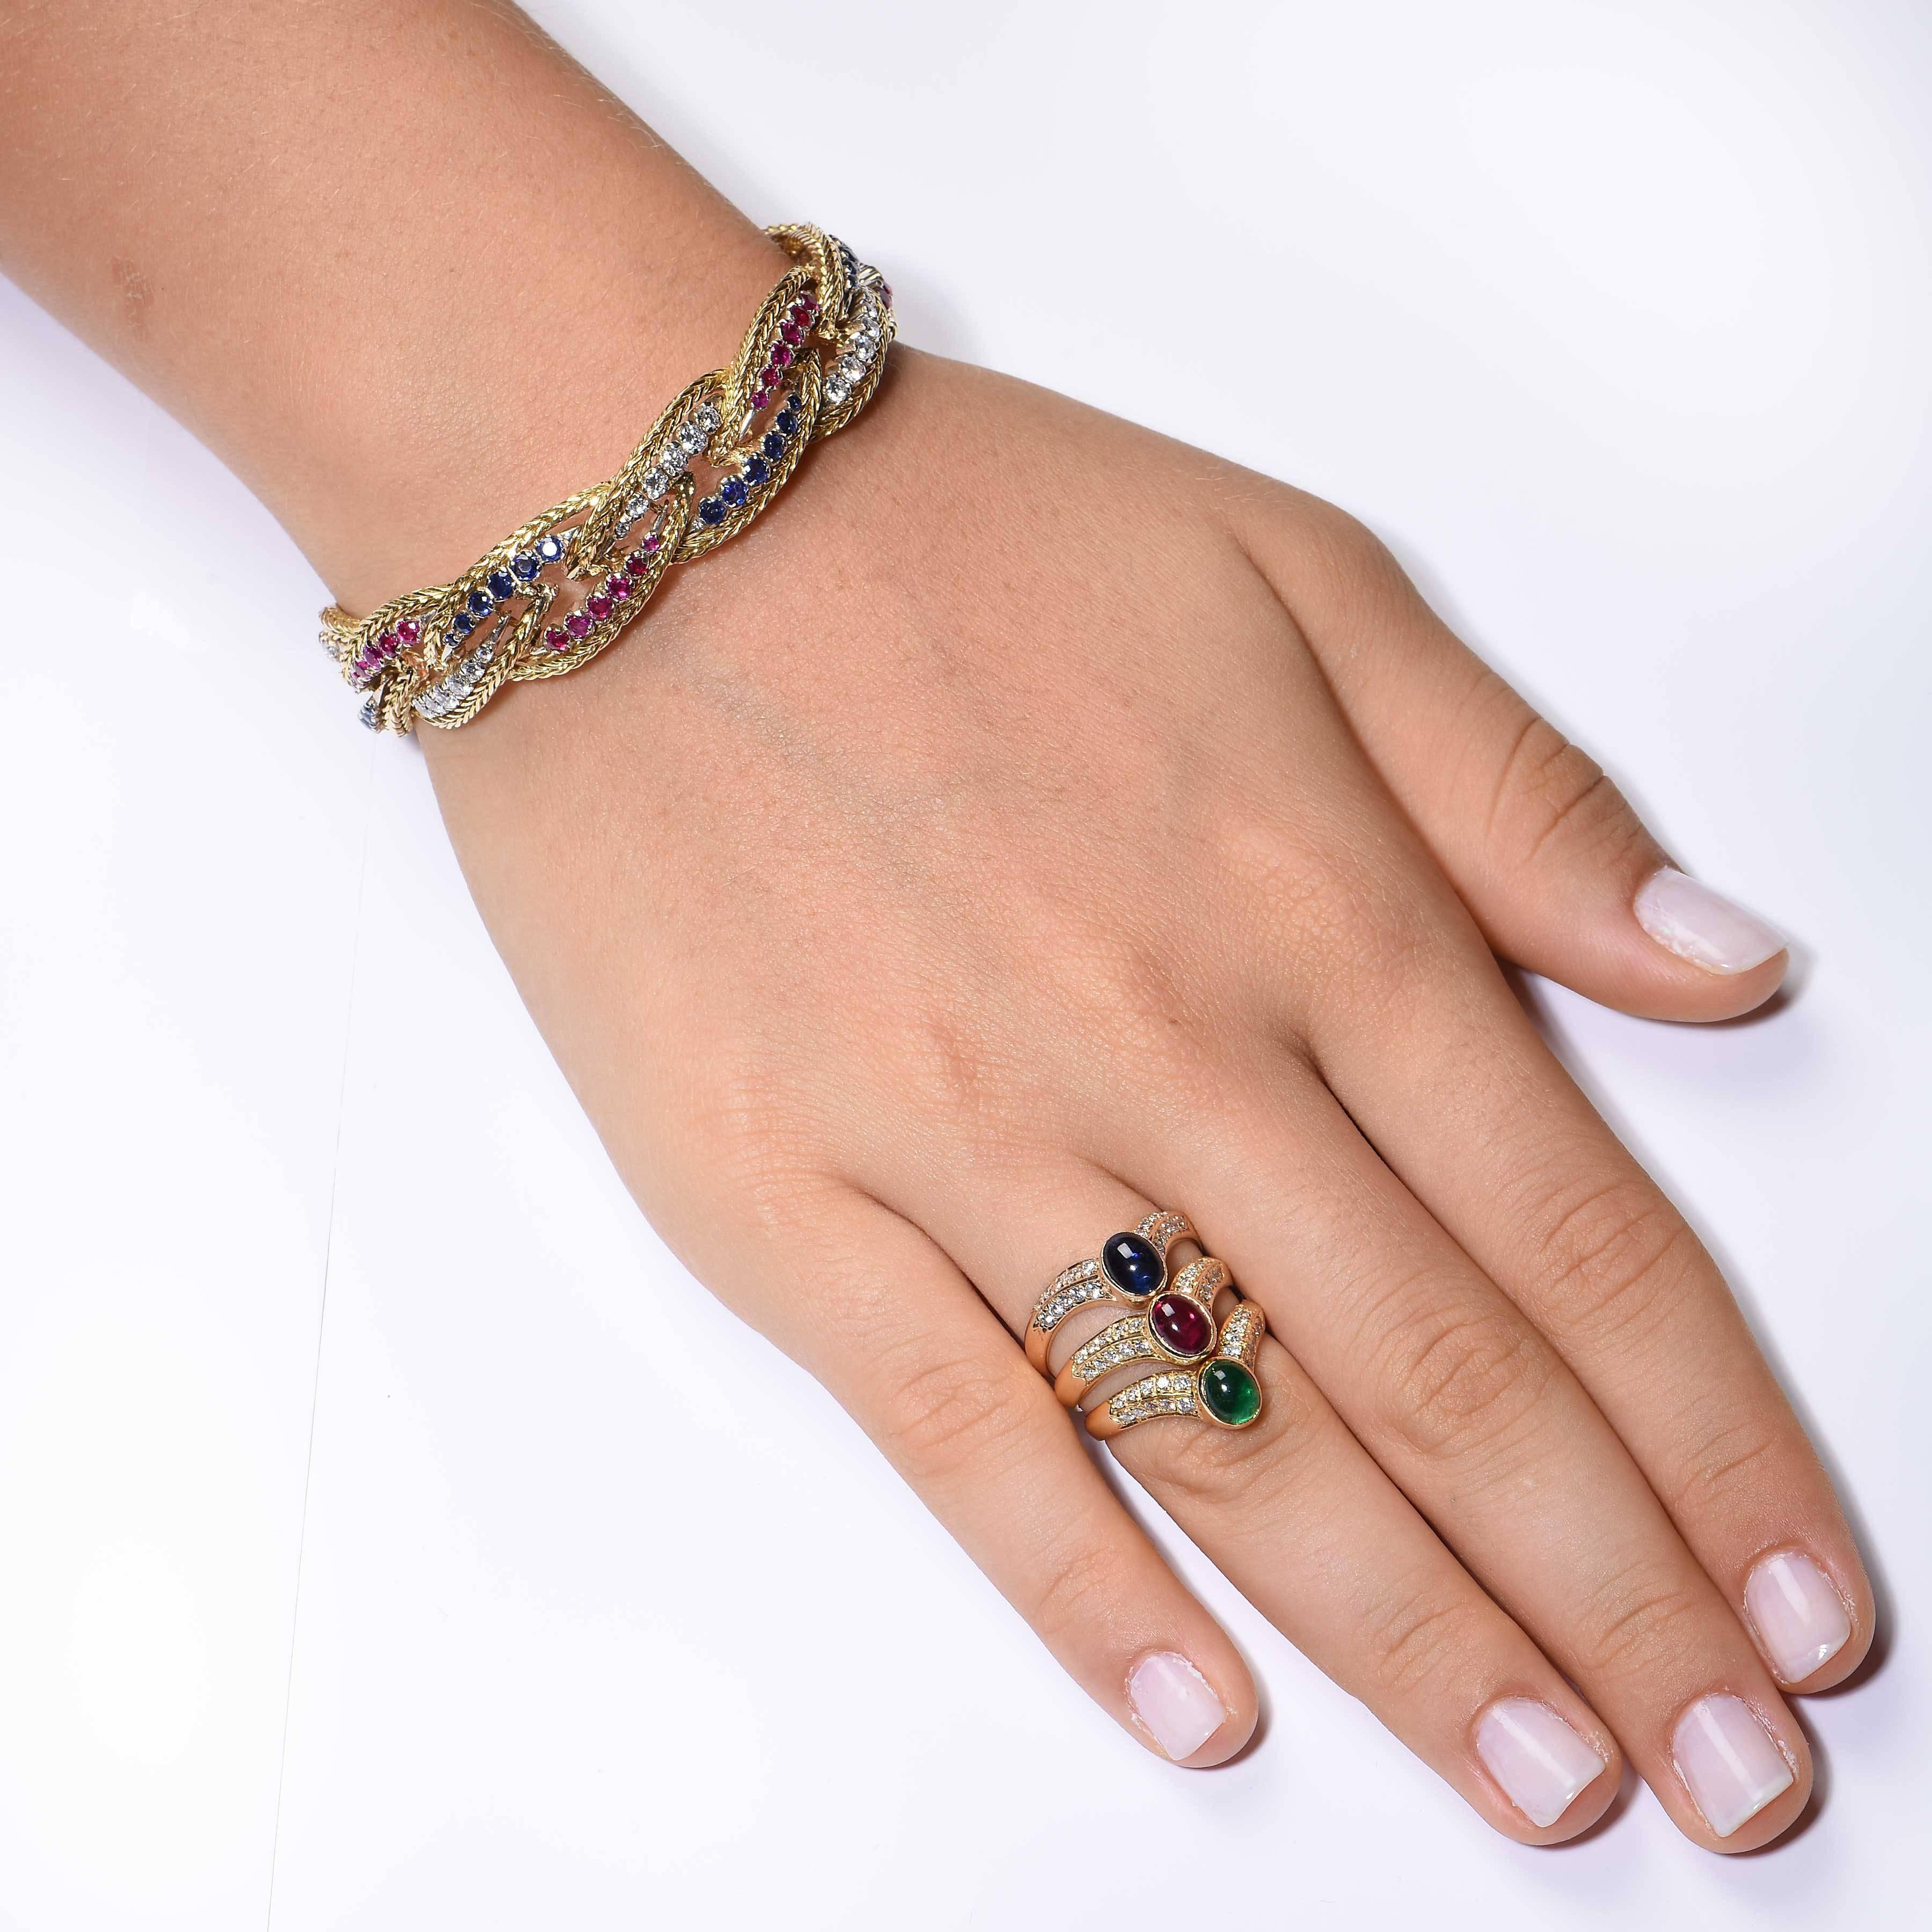 Ce magnifique bracelet tressé des années 1970 est orné de rubis, de saphirs et de diamants. Les diamants ronds de taille brillant pèsent environ 2 carats. Il est également orné de rubis et de saphirs. 

Longueur : 6 3/4 pouces
Type de métal : or